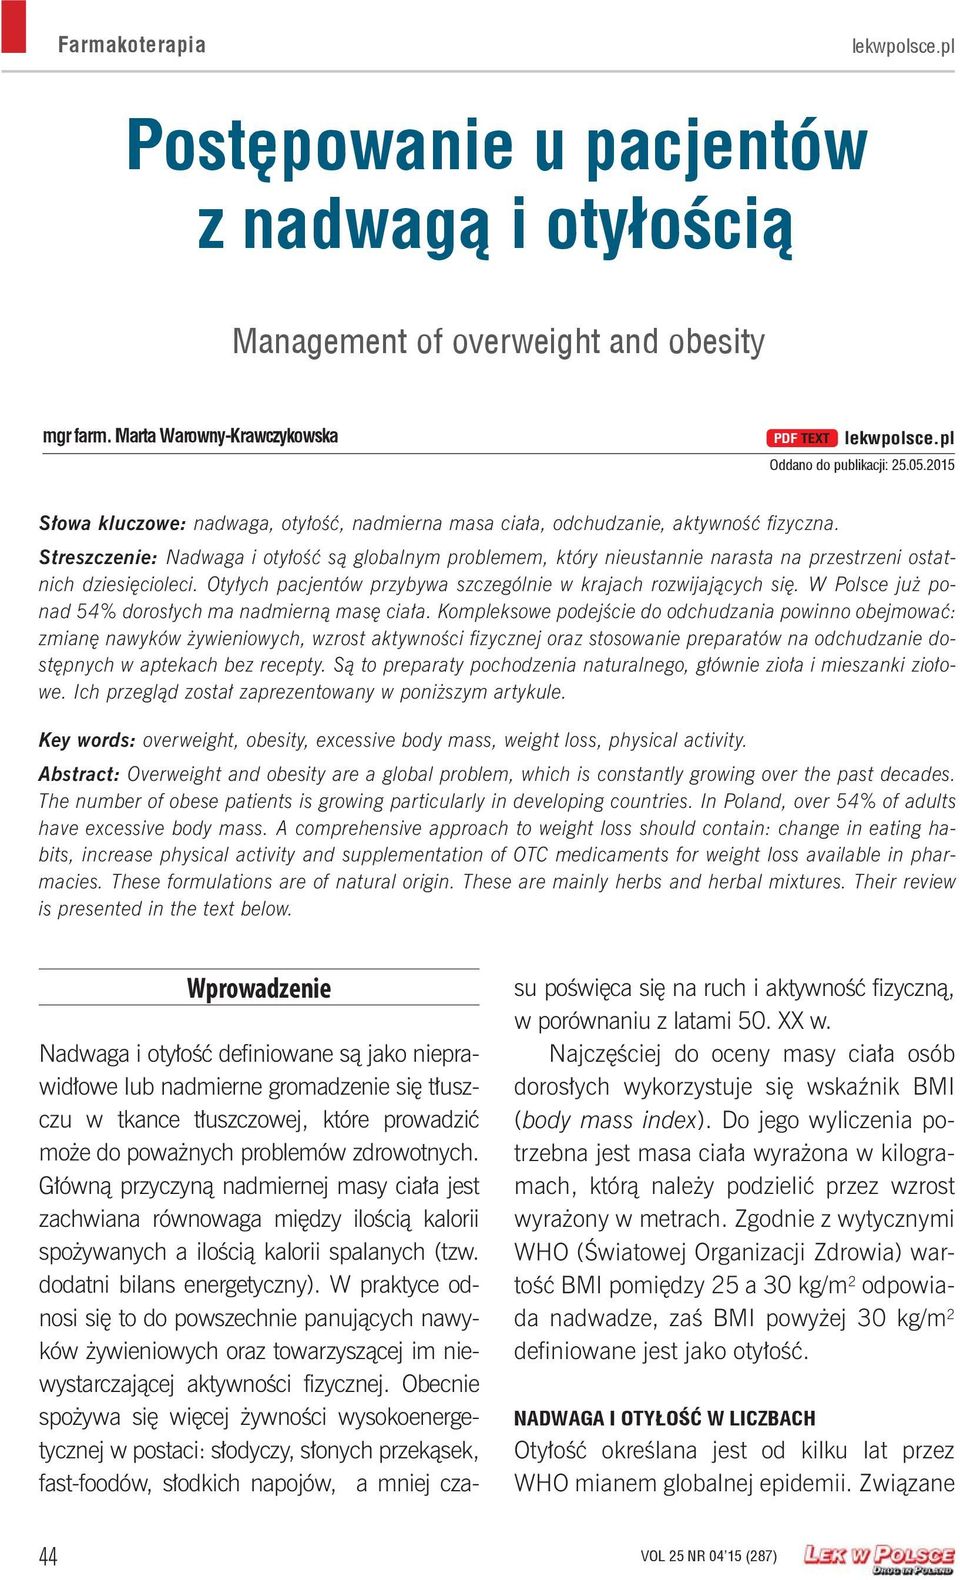 Streszczenie: Nadwaga i otyłość są globalnym problemem, który nieustannie narasta na przestrzeni ostatnich dziesięcioleci. Otyłych pacjentów przybywa szczególnie w krajach rozwijających się.